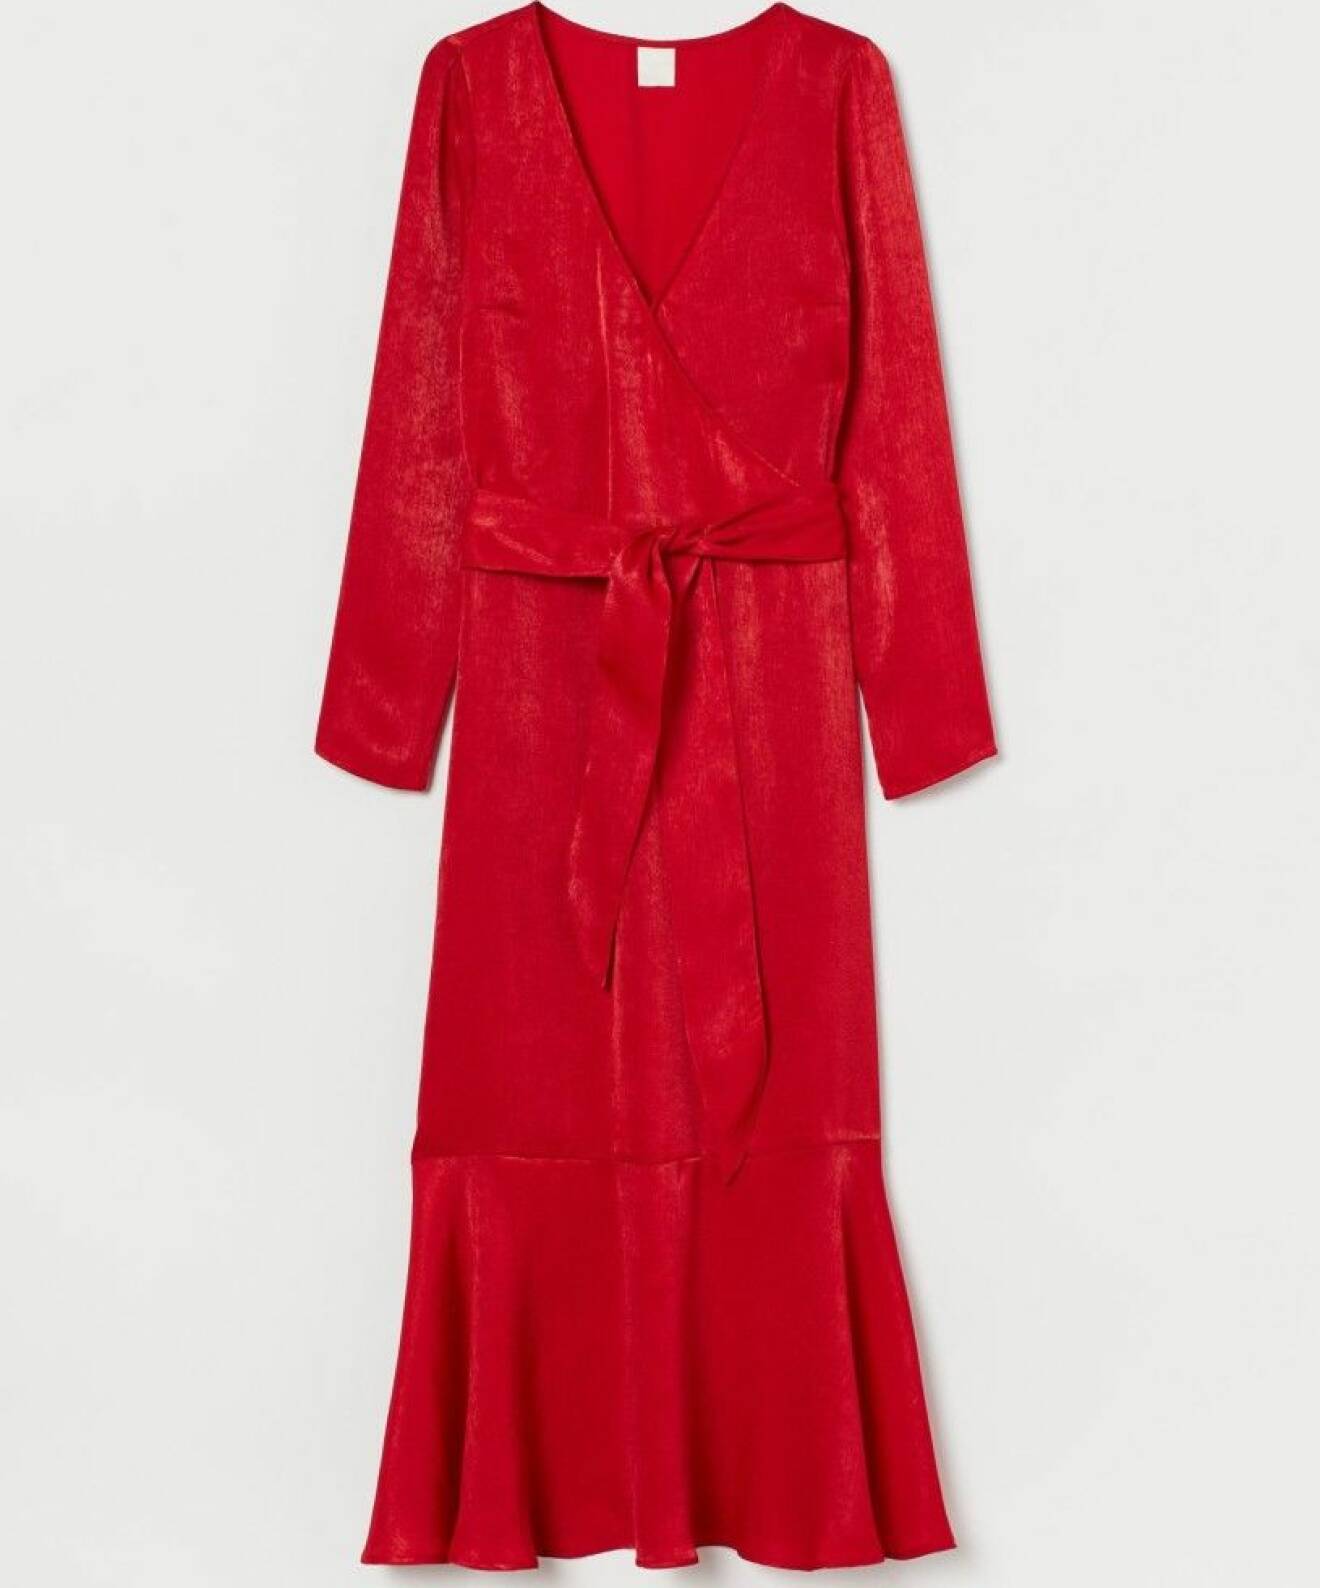 Röd klänning med volang från HM.